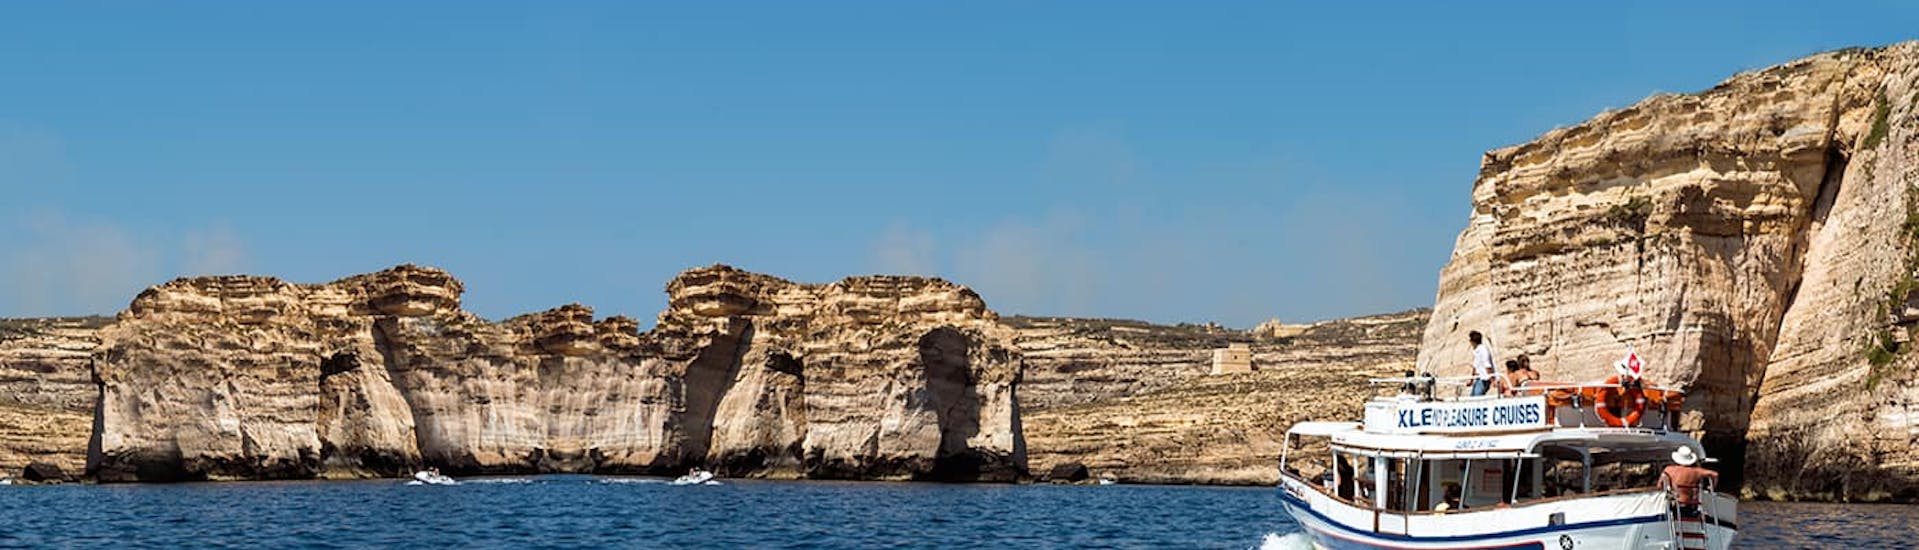 Boot von Xlendi Pleasure Cruise während der Private Bootstour von Gozo um Comino und Gozo.